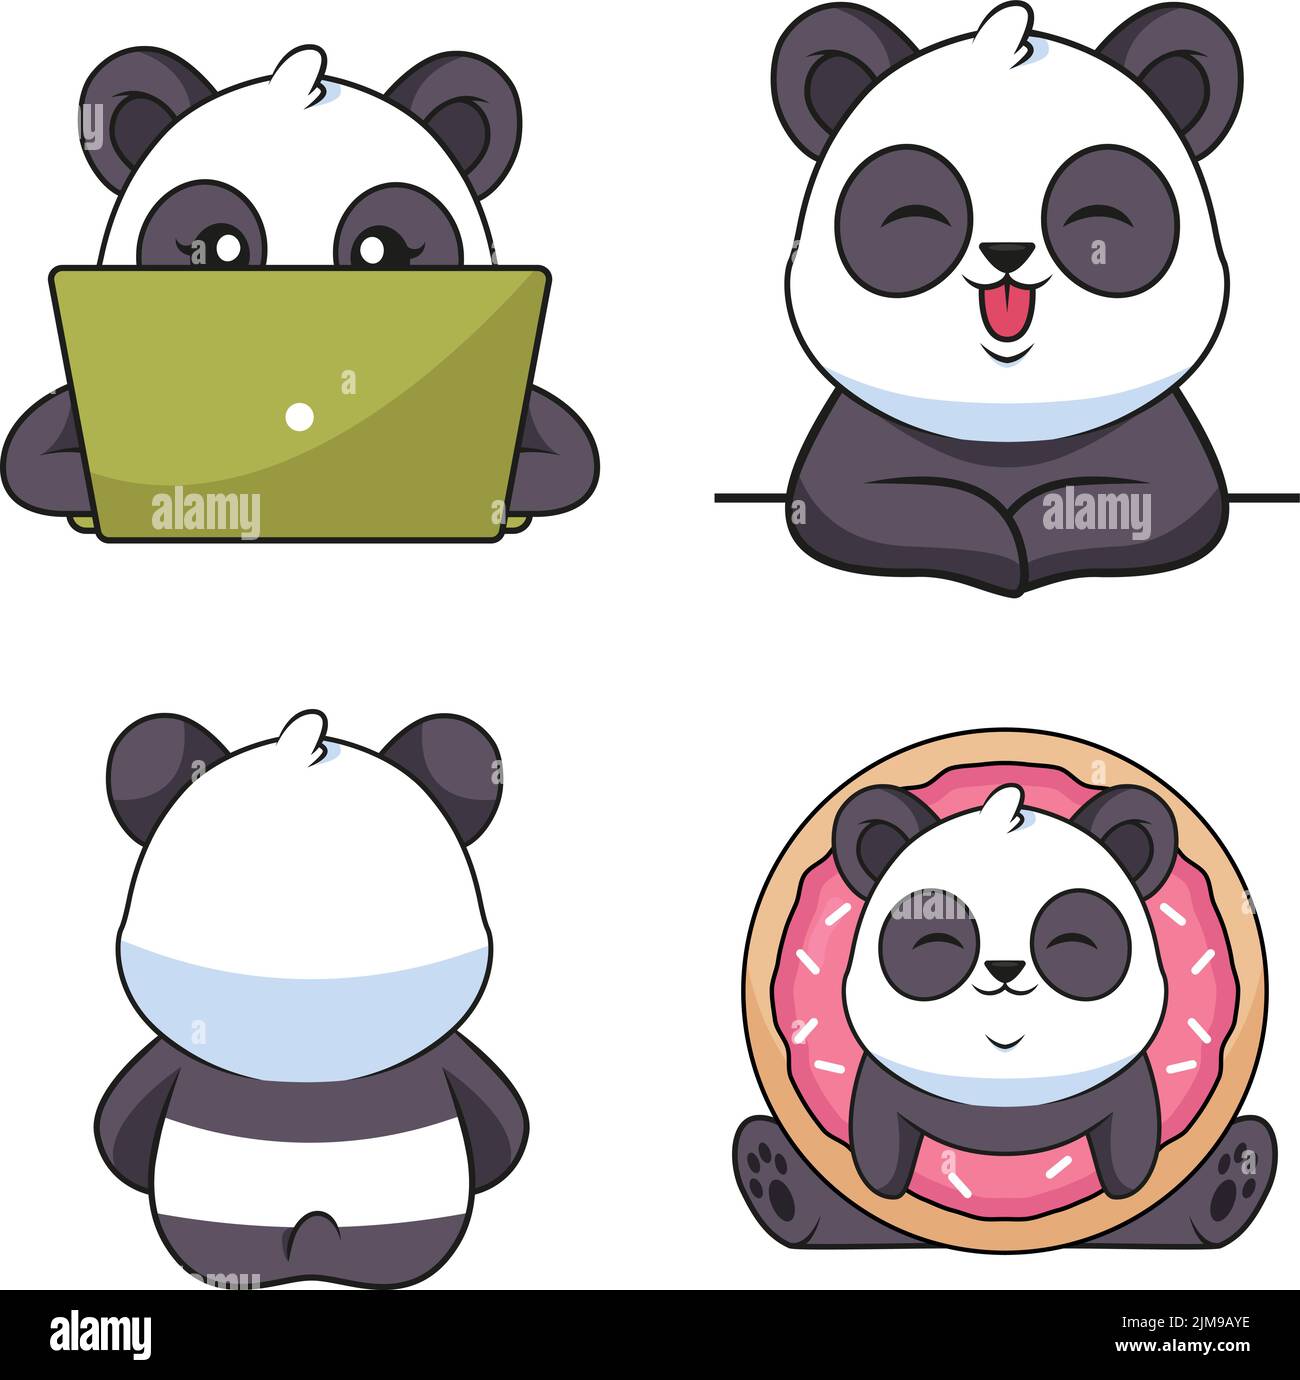 Sammlung von handgezeichneten Pandas mit einem Laptop, lächelnd, zurücklehnen, Donut haltend Stock Vektor